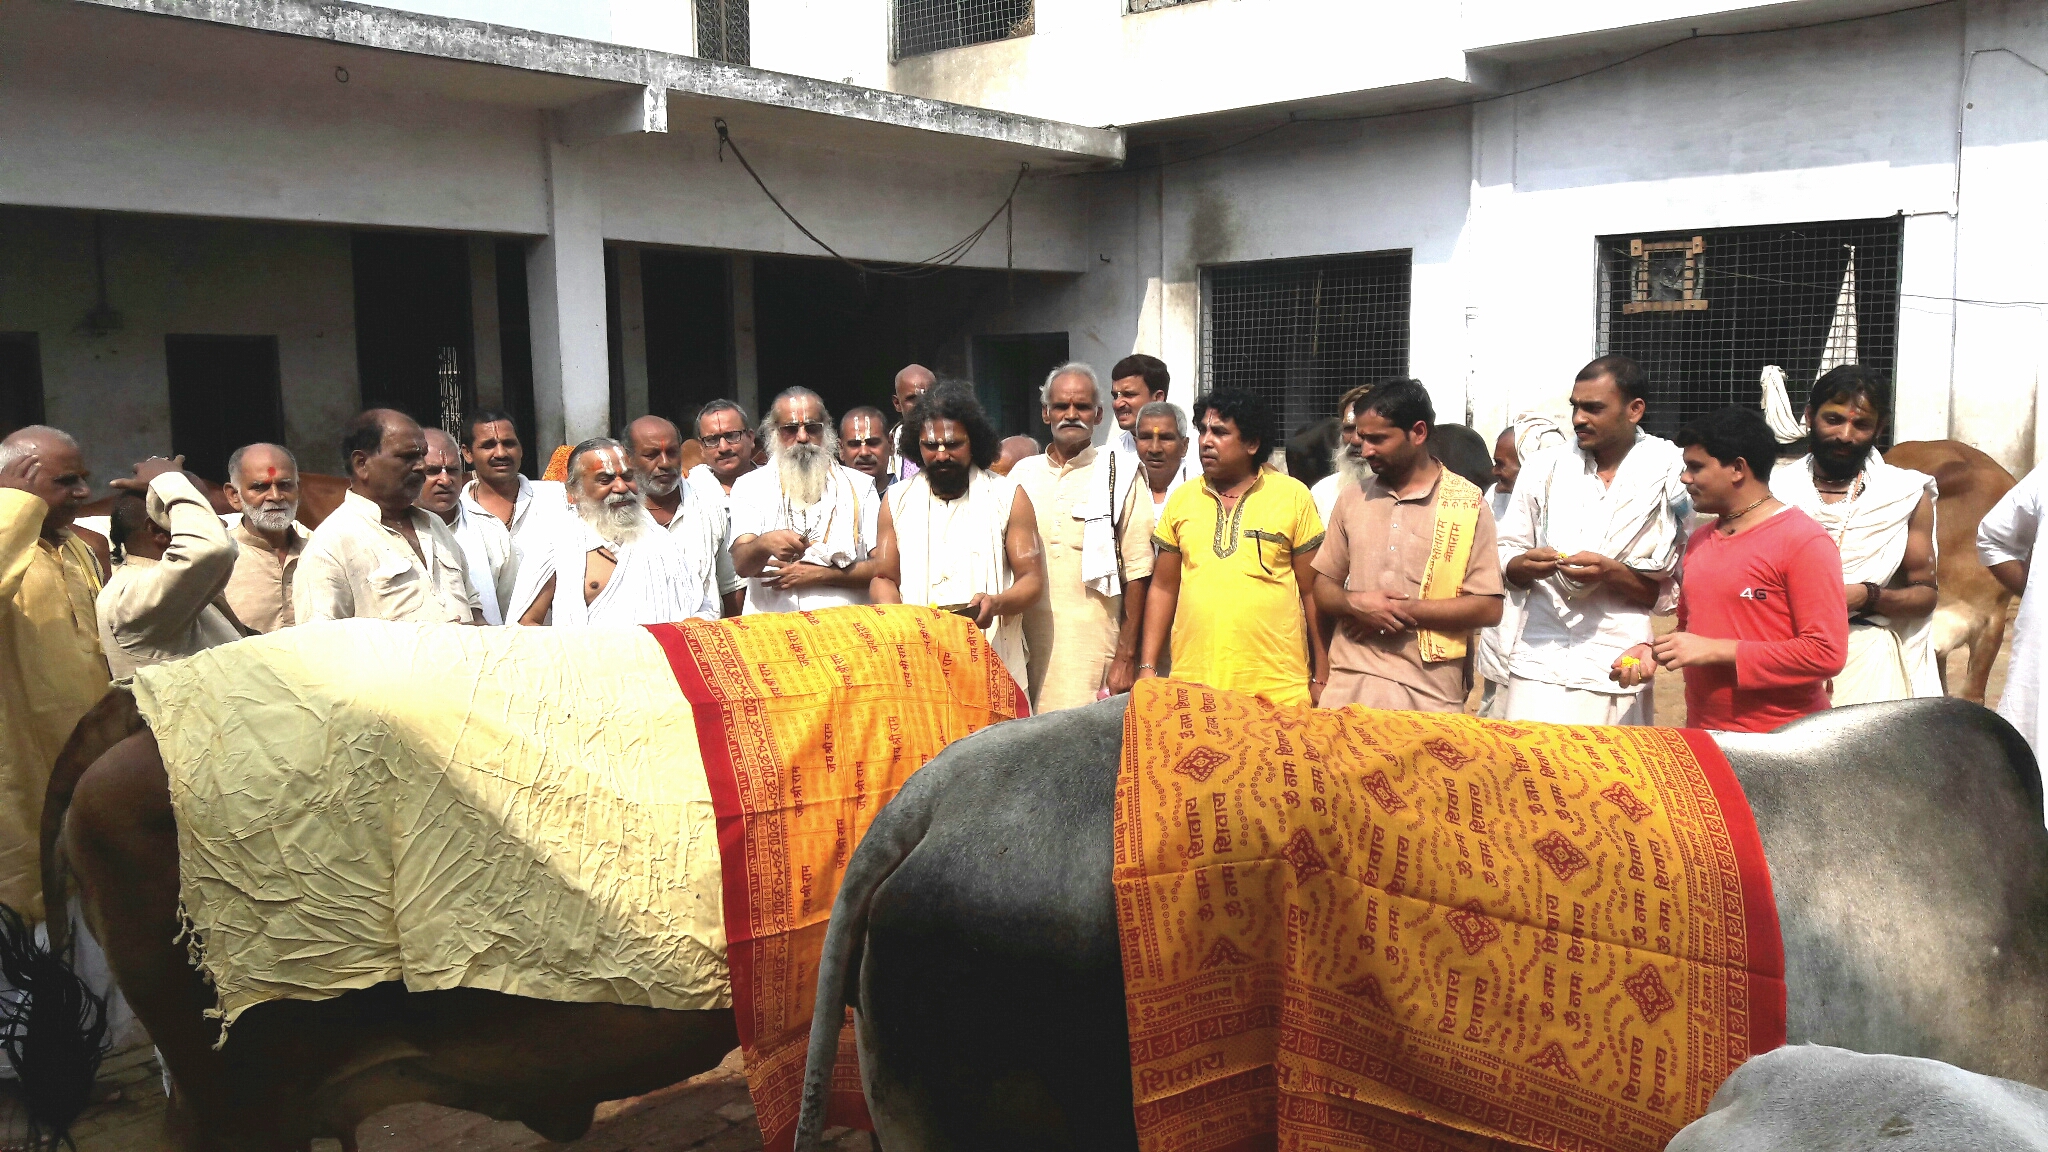 Gopashtami Poojan Programe Ornized In Karsewakpuram Ayodhya